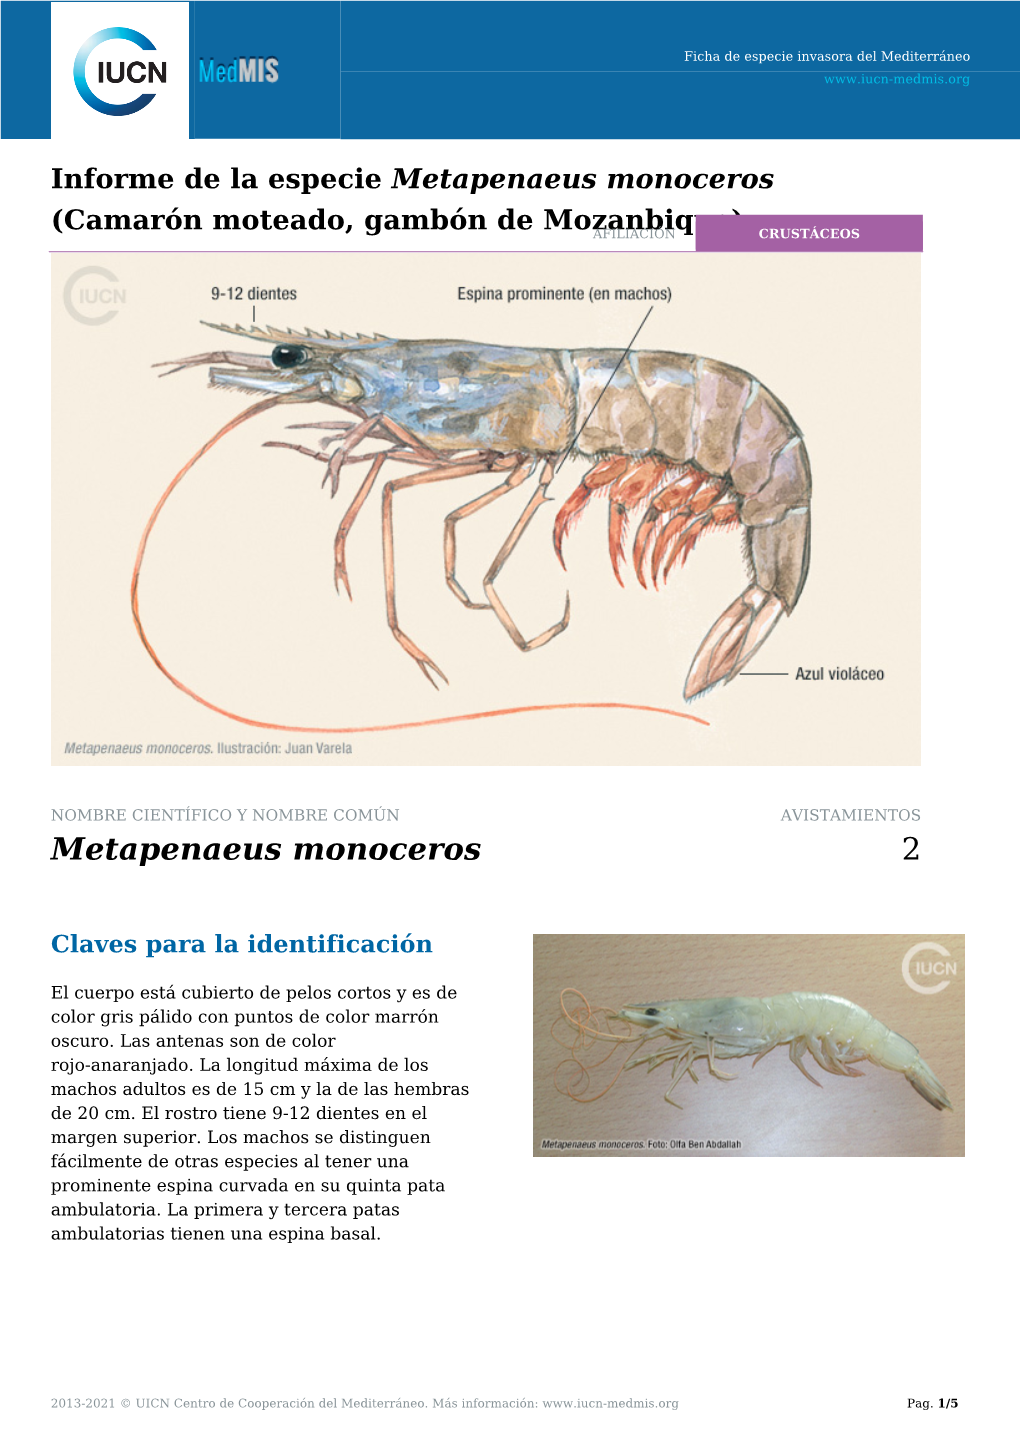 Informe De La Especie Metapenaeus Monoceros (Camarón Moteado, Gambón De Mozanbique)